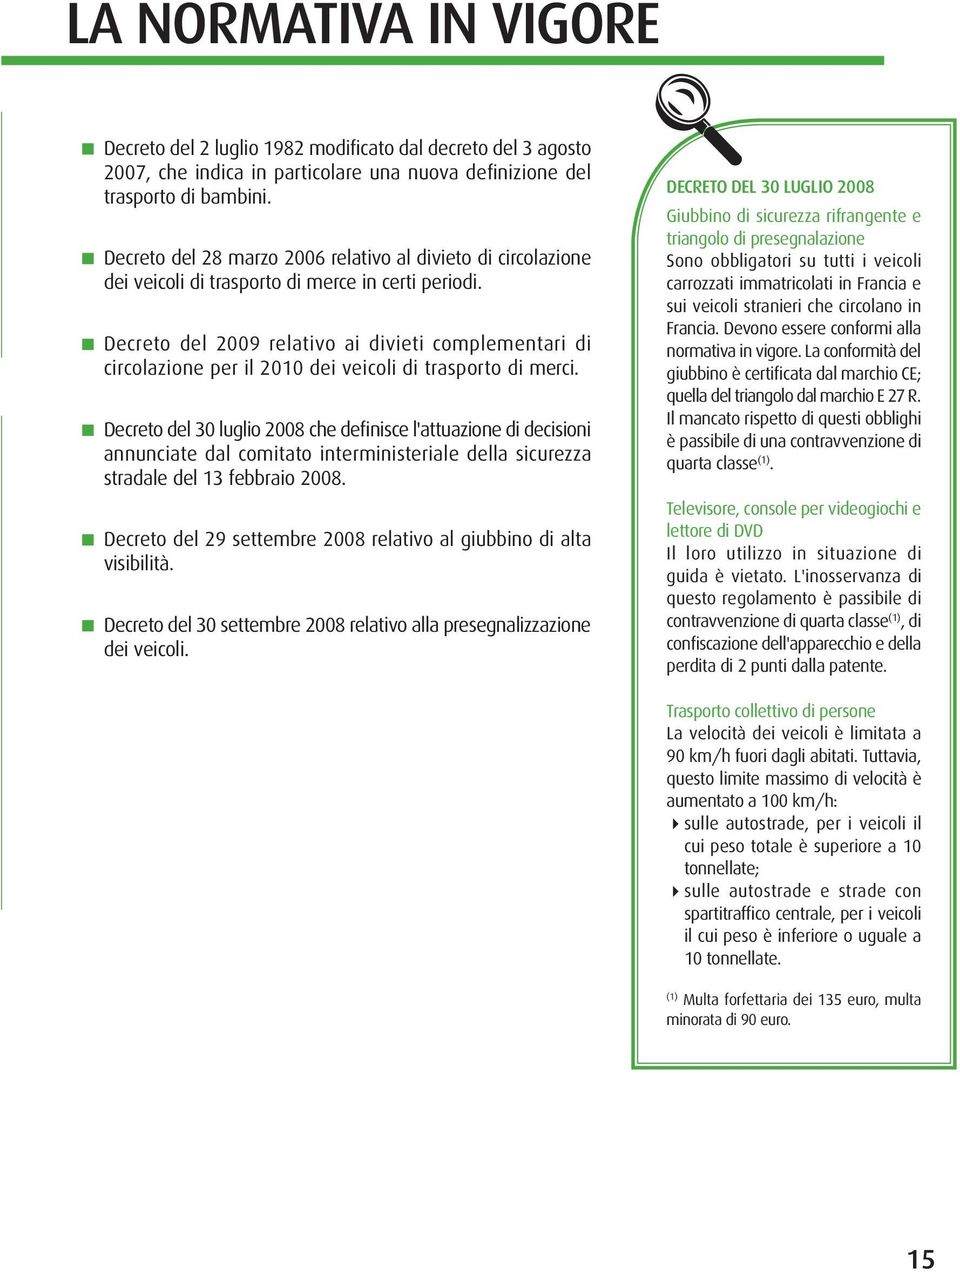 Decreto del 2009 relativo ai divieti complementari di circolazione per il 2010 dei veicoli di trasporto di merci.